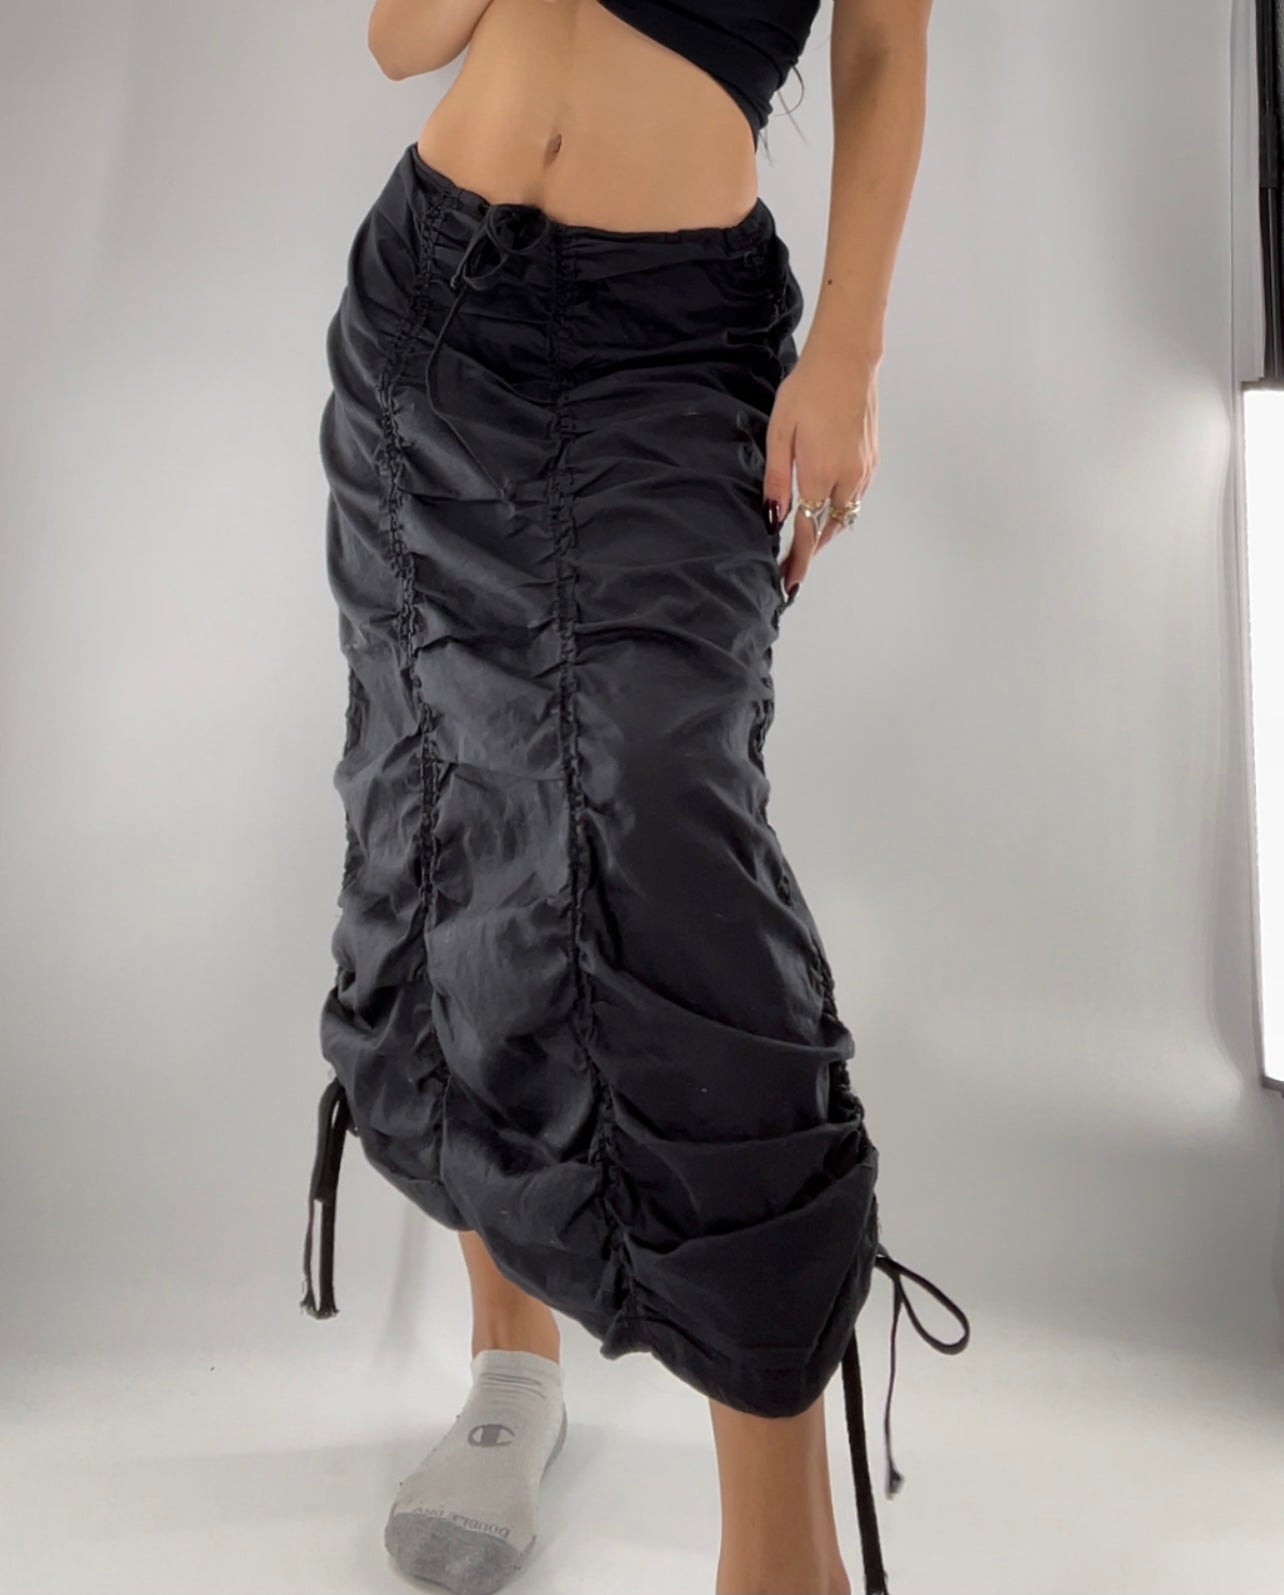 Mix Nouveau NY Black Cargo Skirt (Large)10